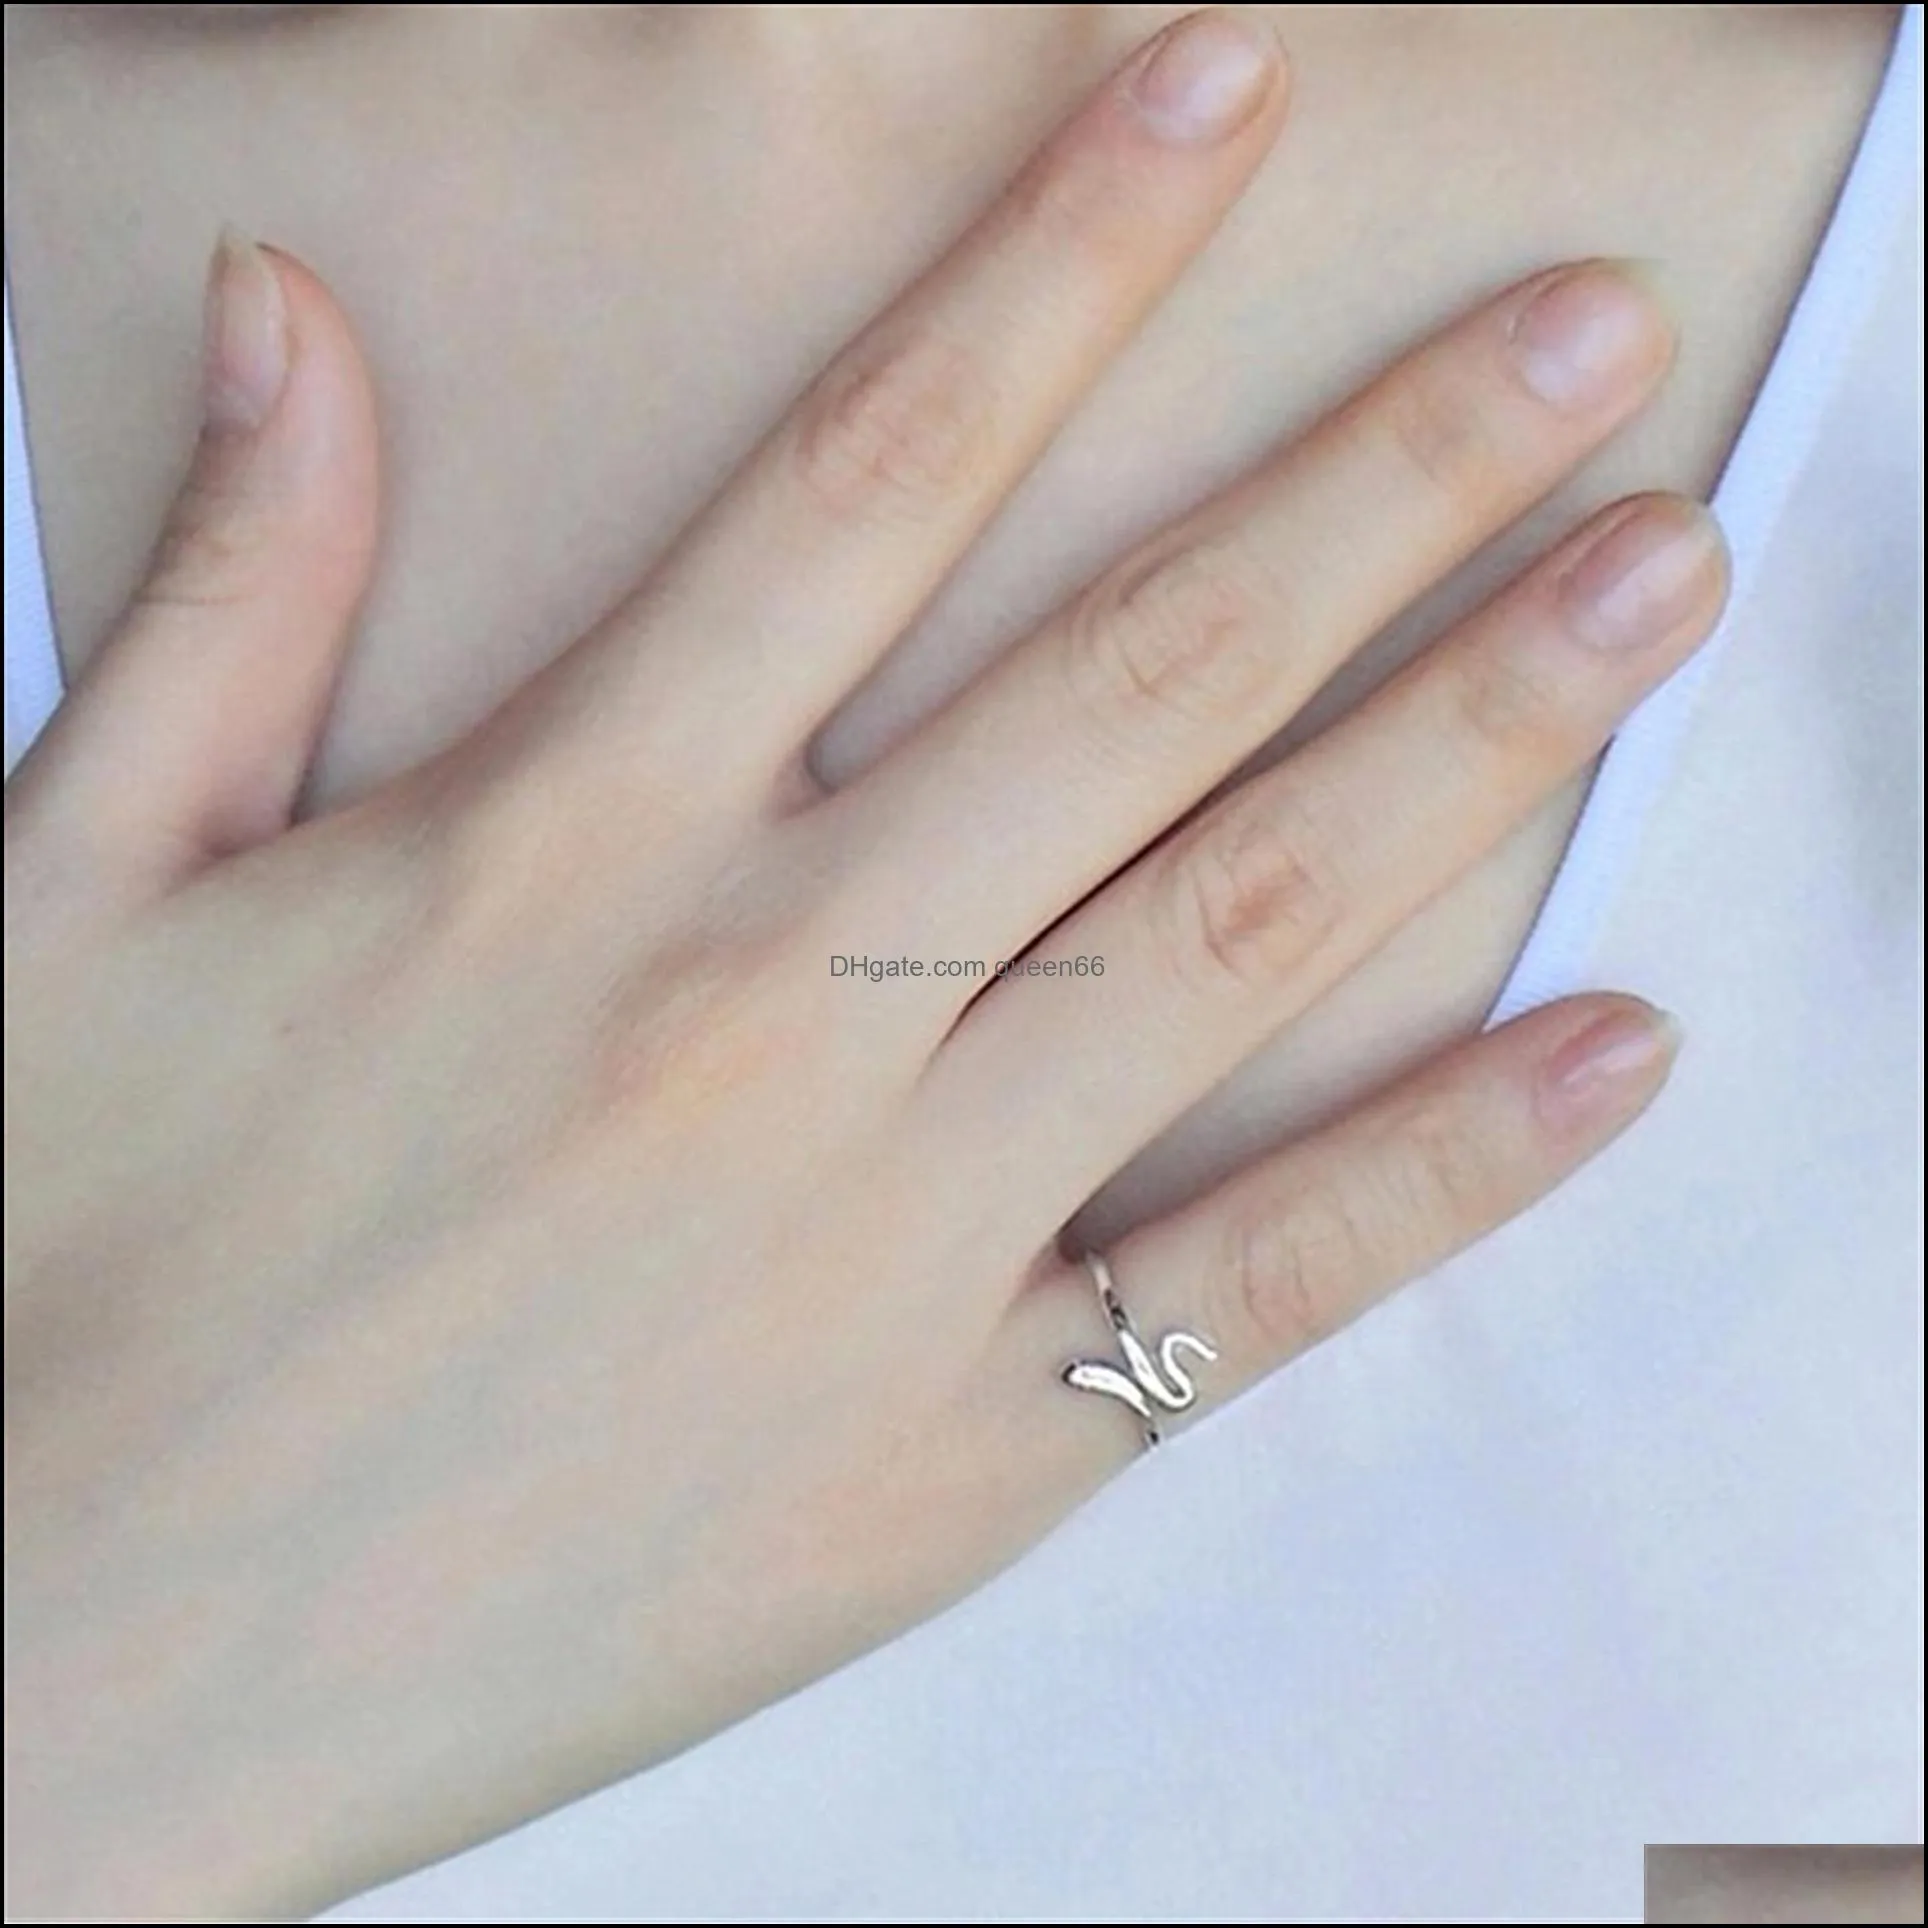 lovely snake rings open adjustable finger ring for women wedding fine jewelry girl gift simple engagement ring